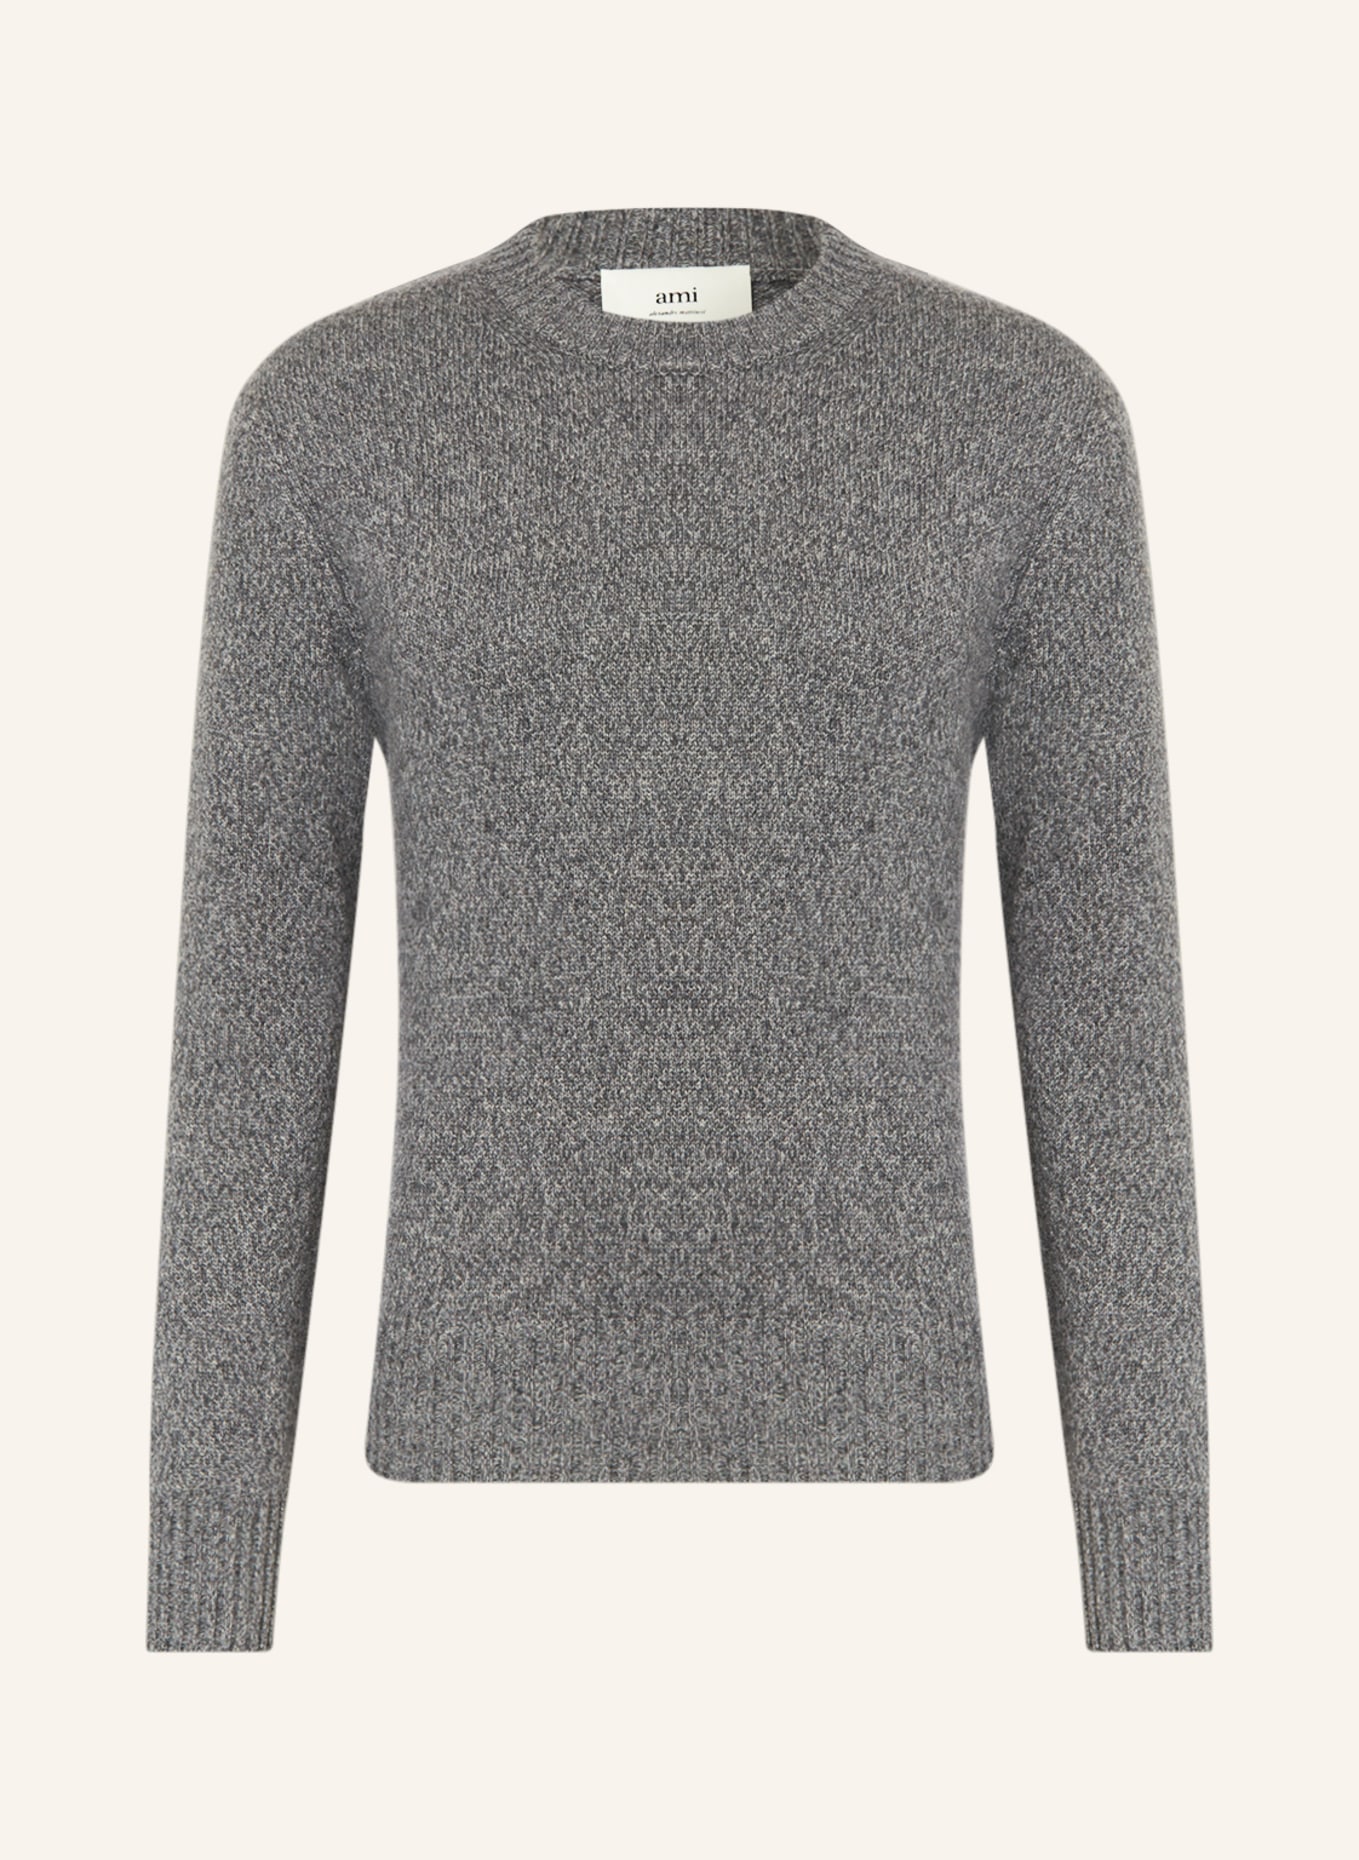 AMI PARIS Cashmere sweater, Color: GRAY (Image 1)